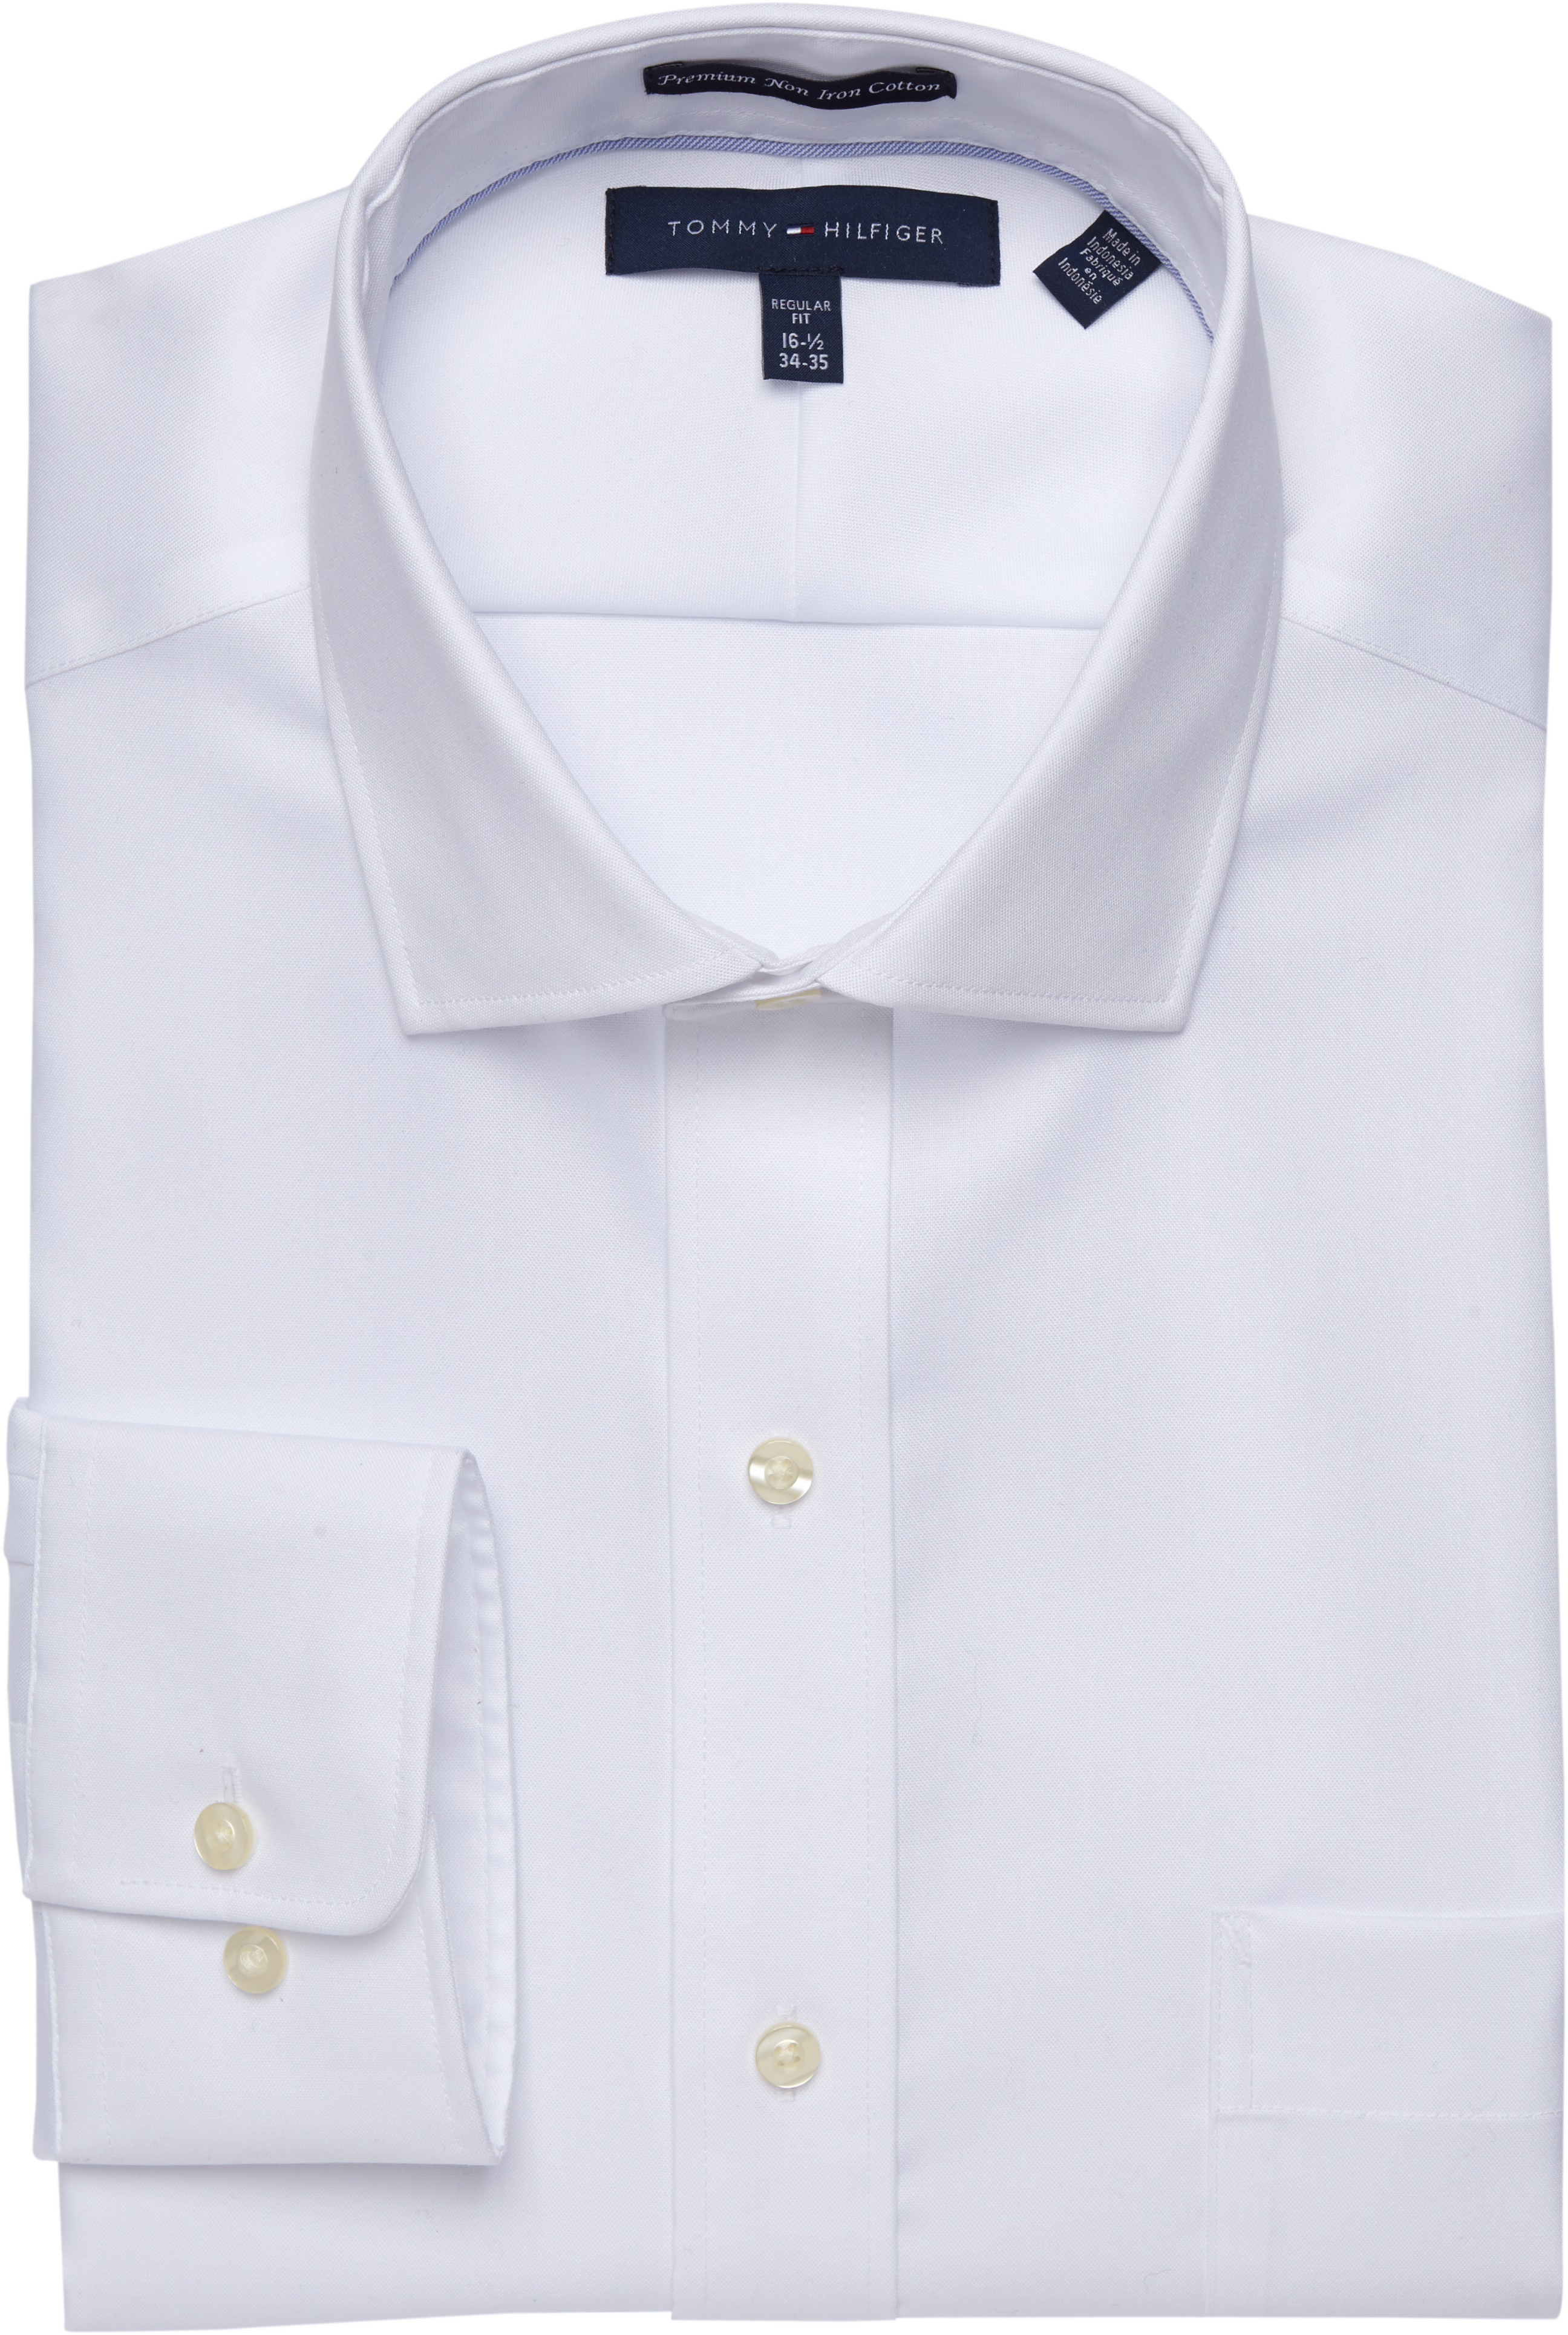 945 Misforståelse At sige sandheden Tommy Hilfiger White Classic Fit Dress Shirt - Men's Sale | Men's Wearhouse